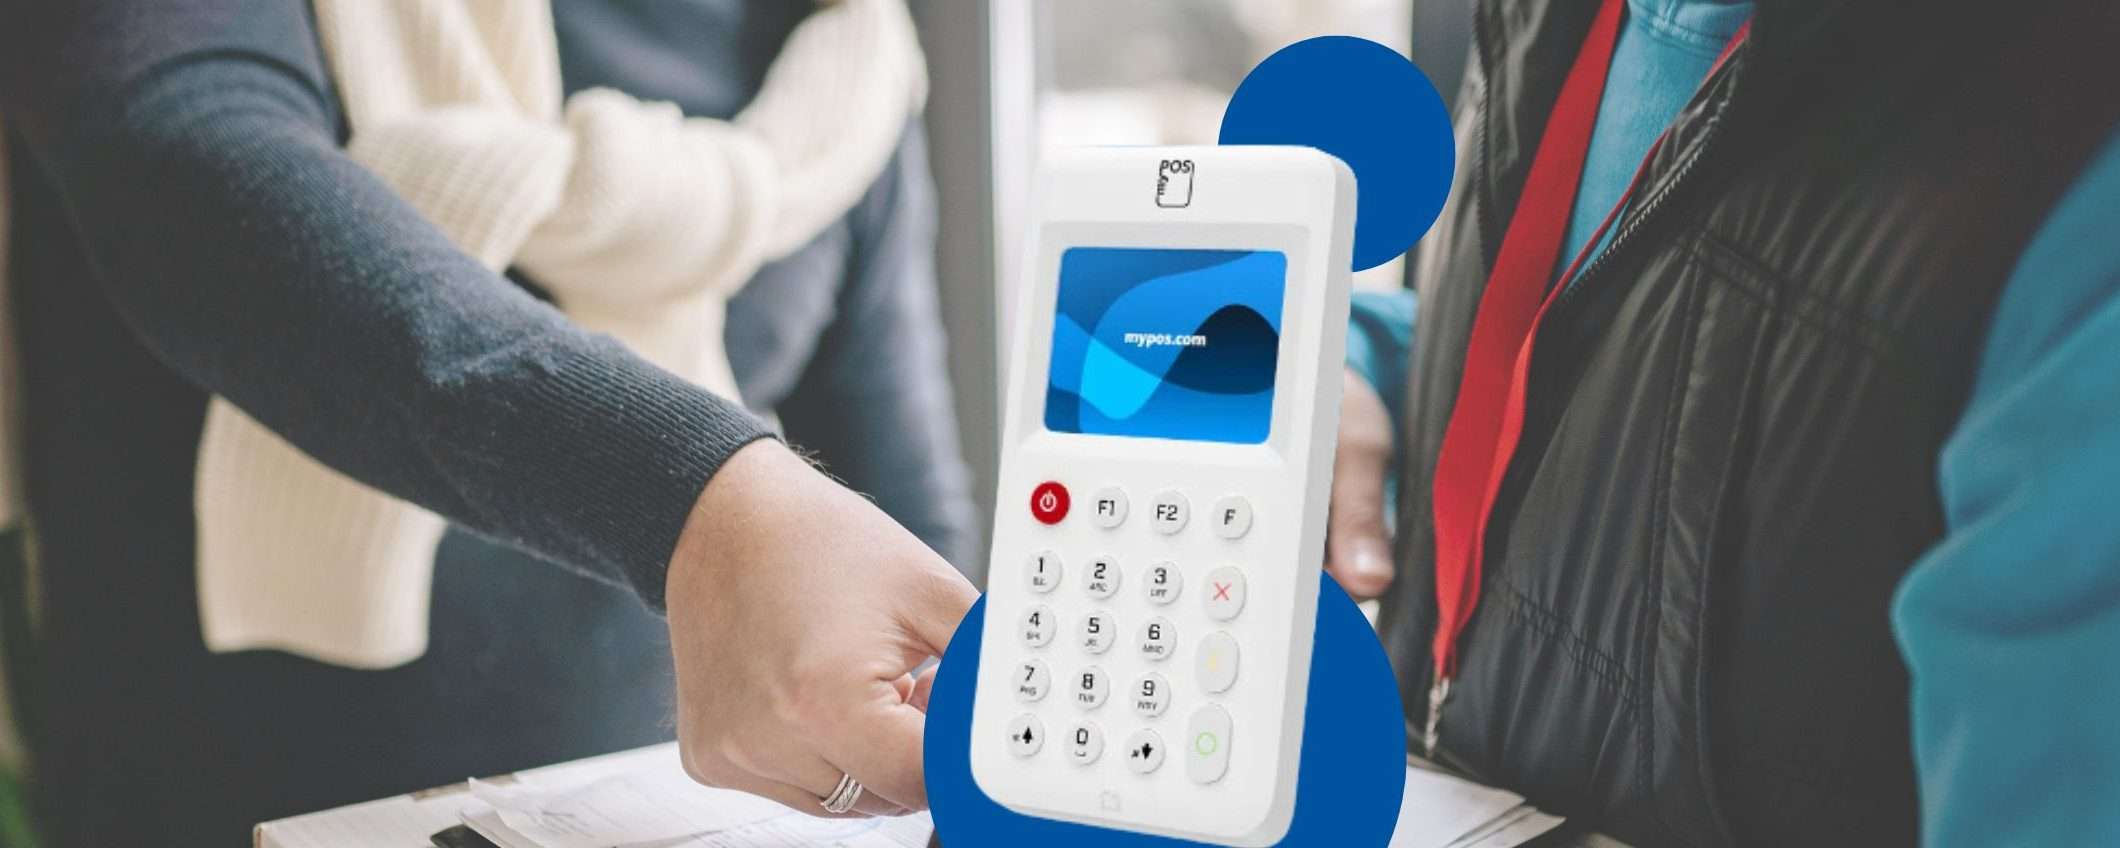 myPOS Go 2: il modo smart per accettare i pagamenti elettronici